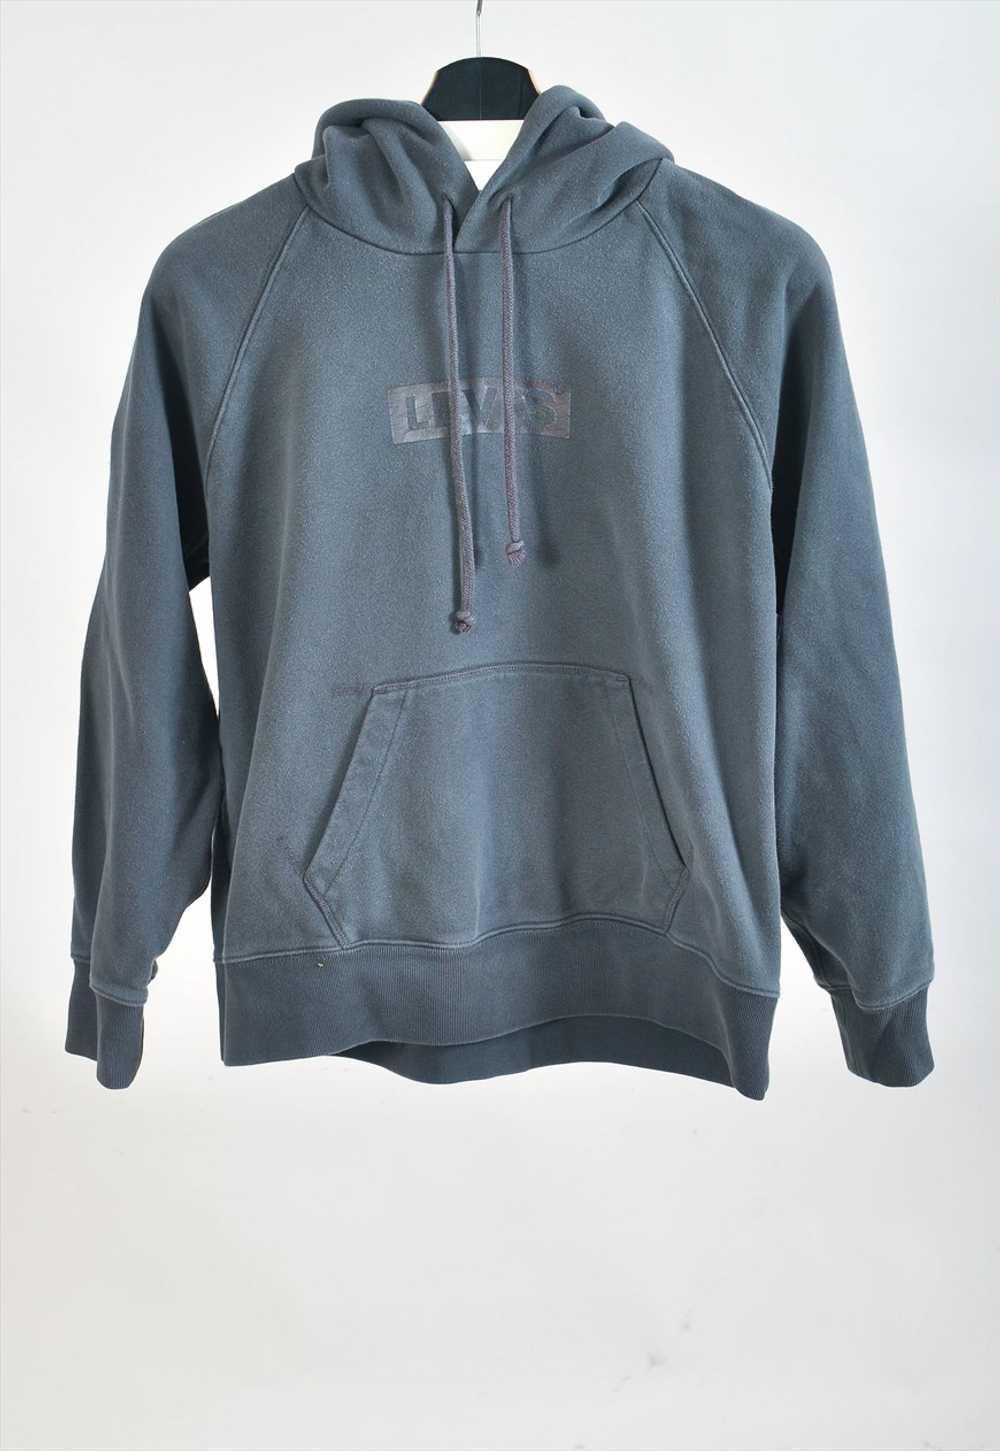 Vintage 90s Levi's hoodie in grey - image 1